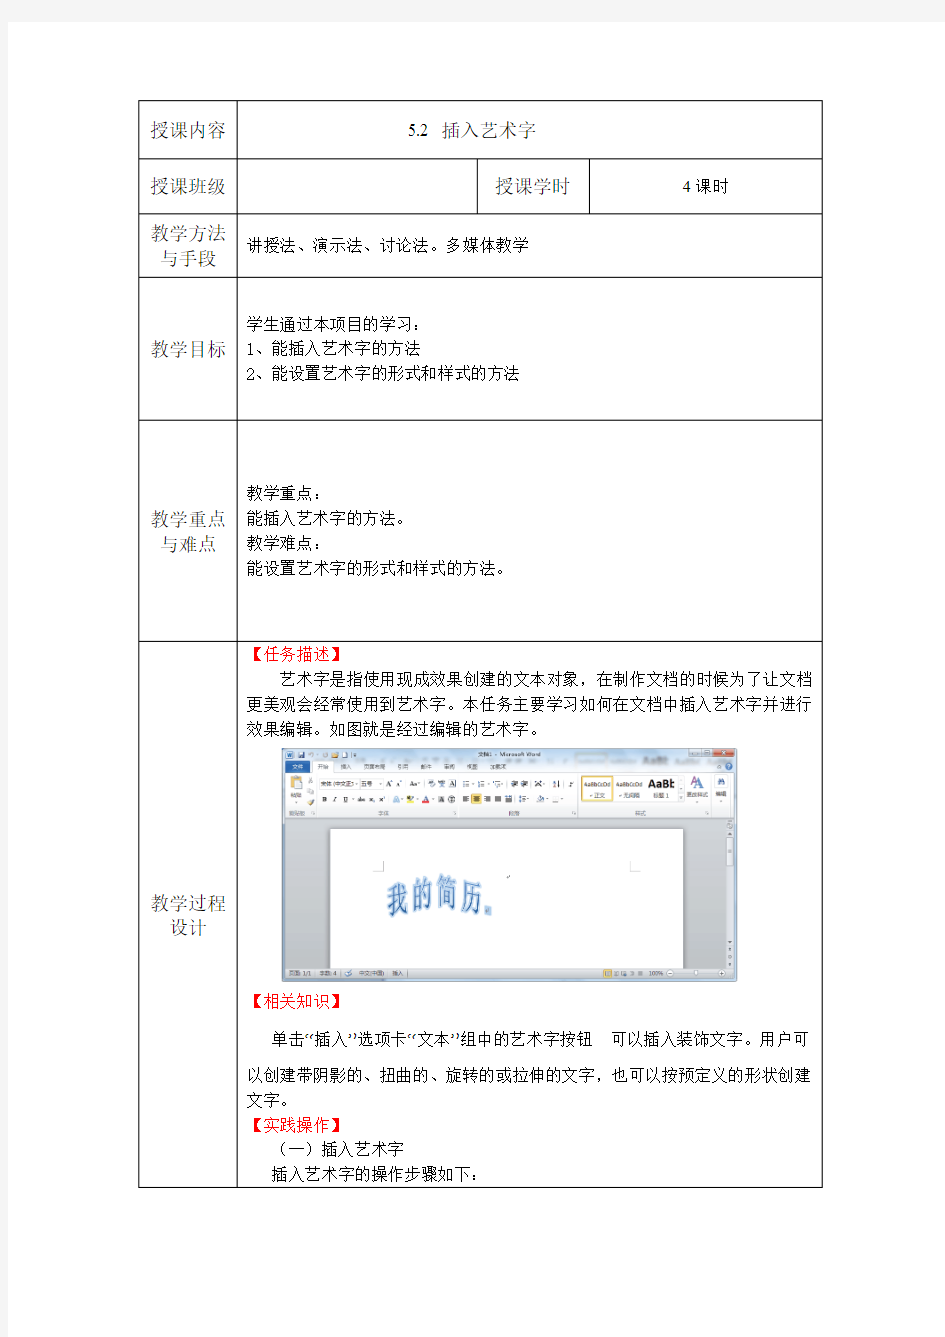 电子教案-《中文版Office 2010基础与实训》-A06-3969(示例) 任务5.2